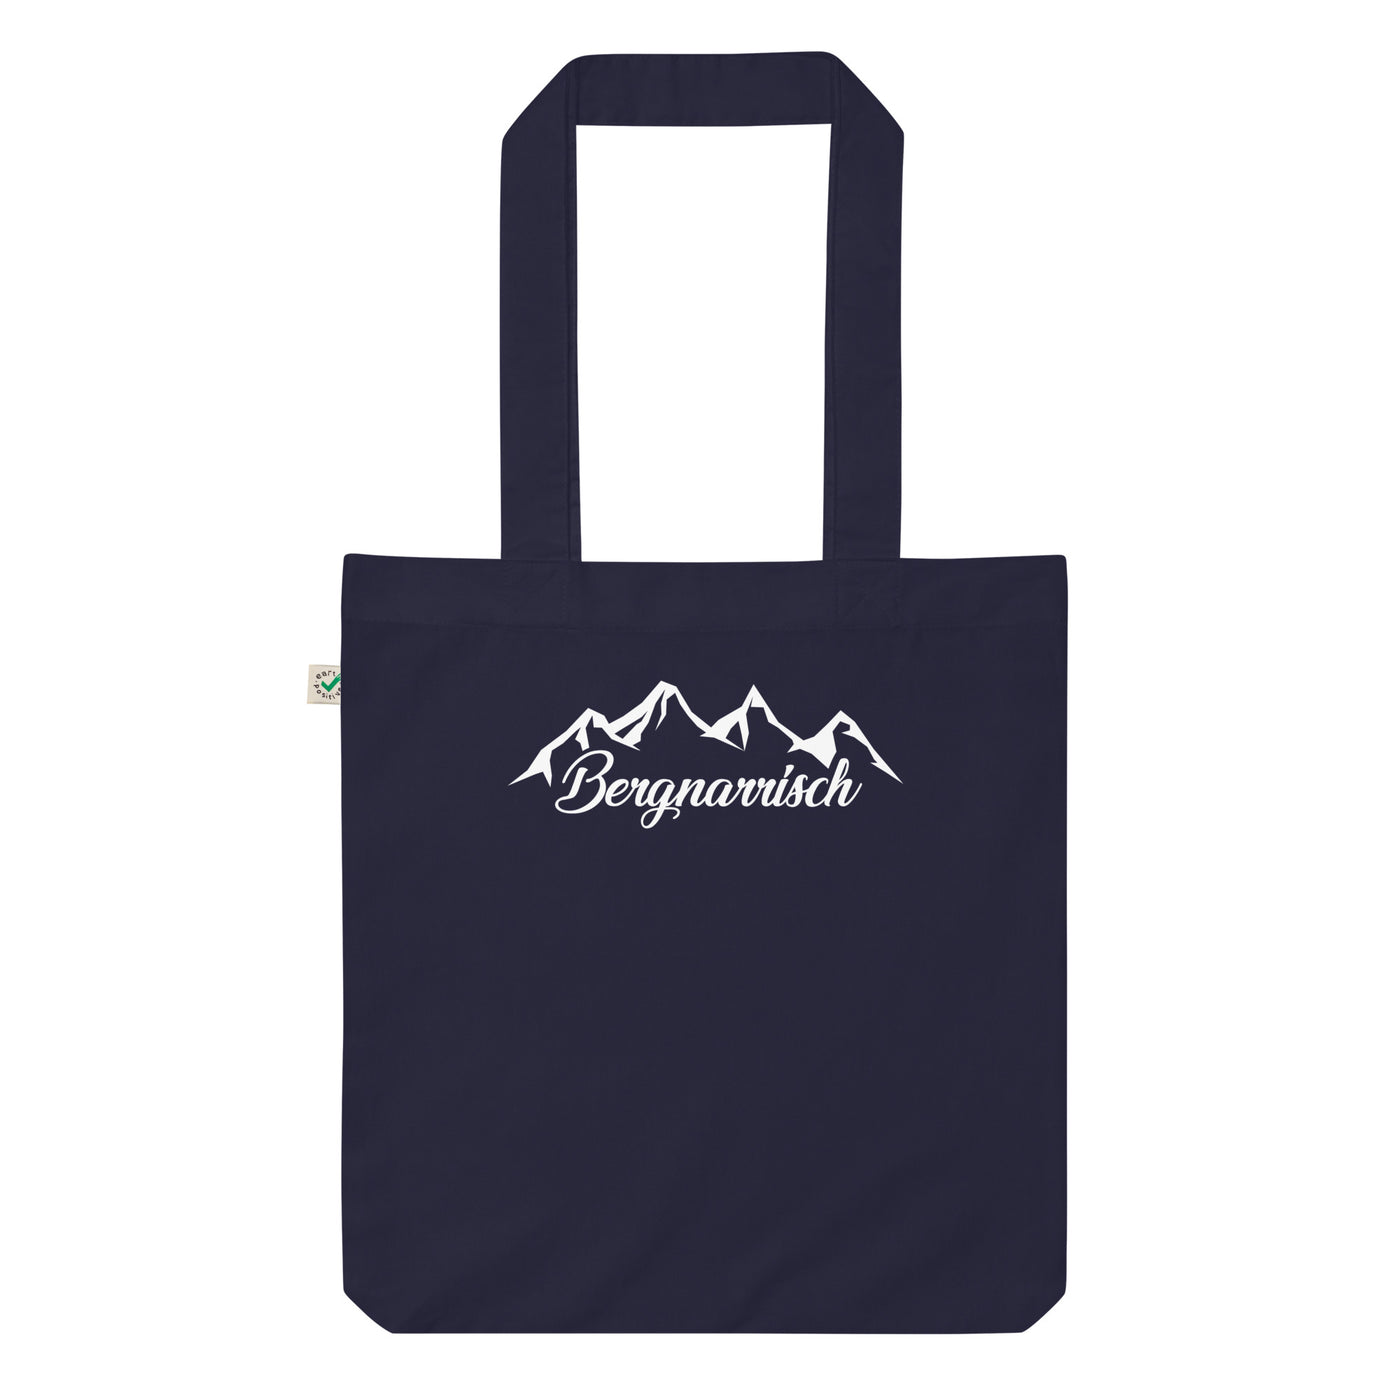 Bergnarrisch - Organic Einkaufstasche berge Navy